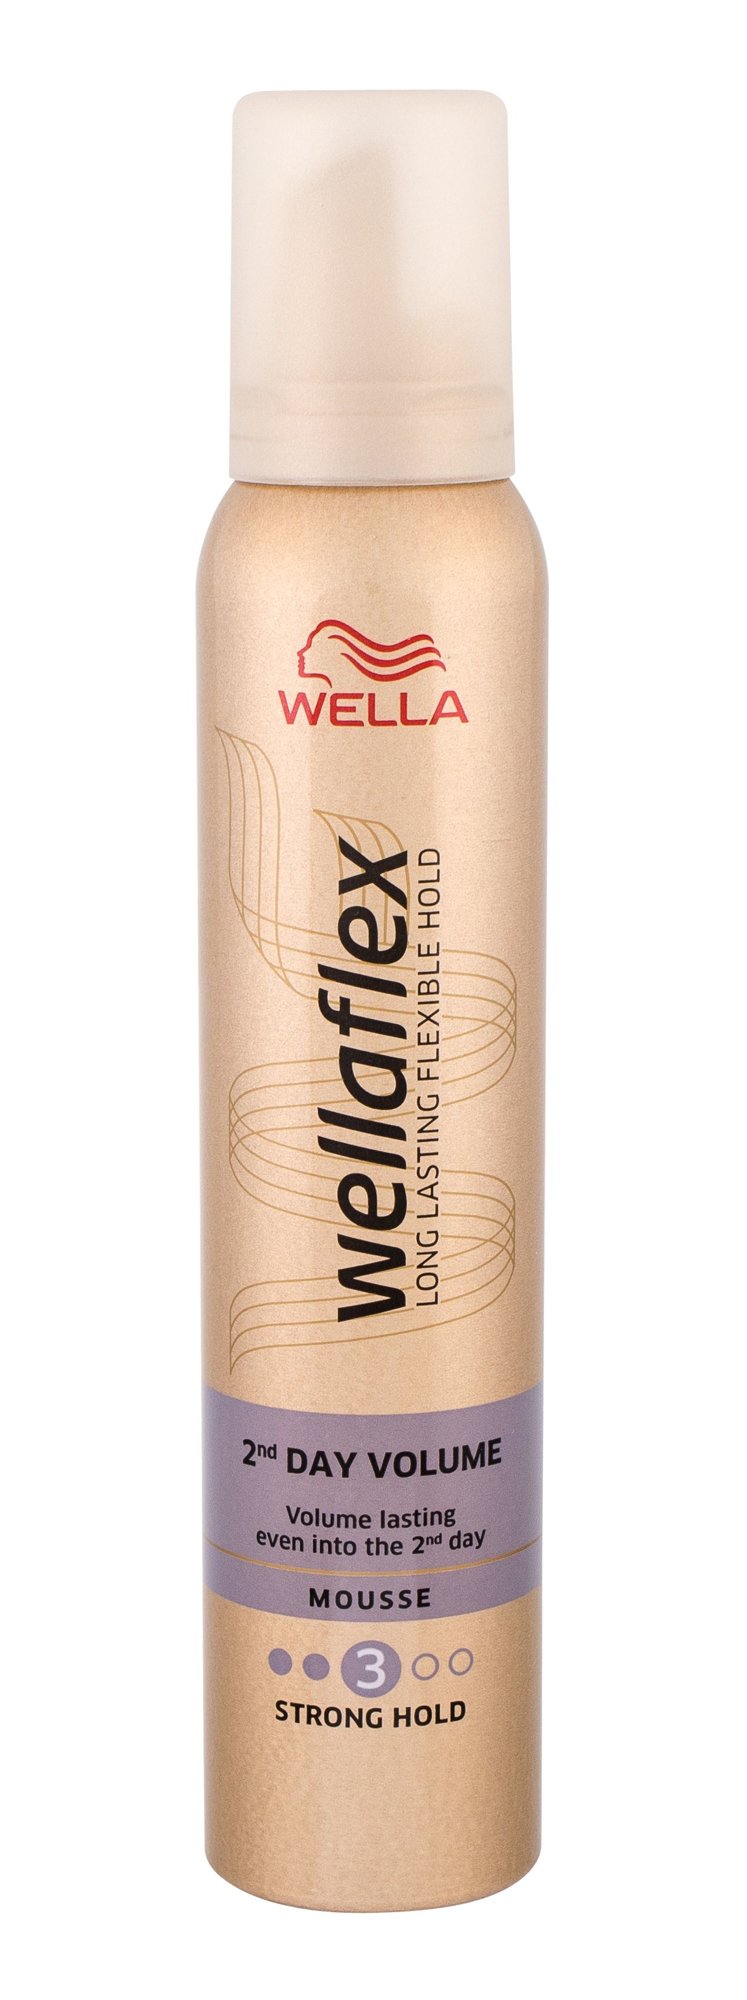 Wella Wellaflex 2nd Day Volume 200ml plaukų putos